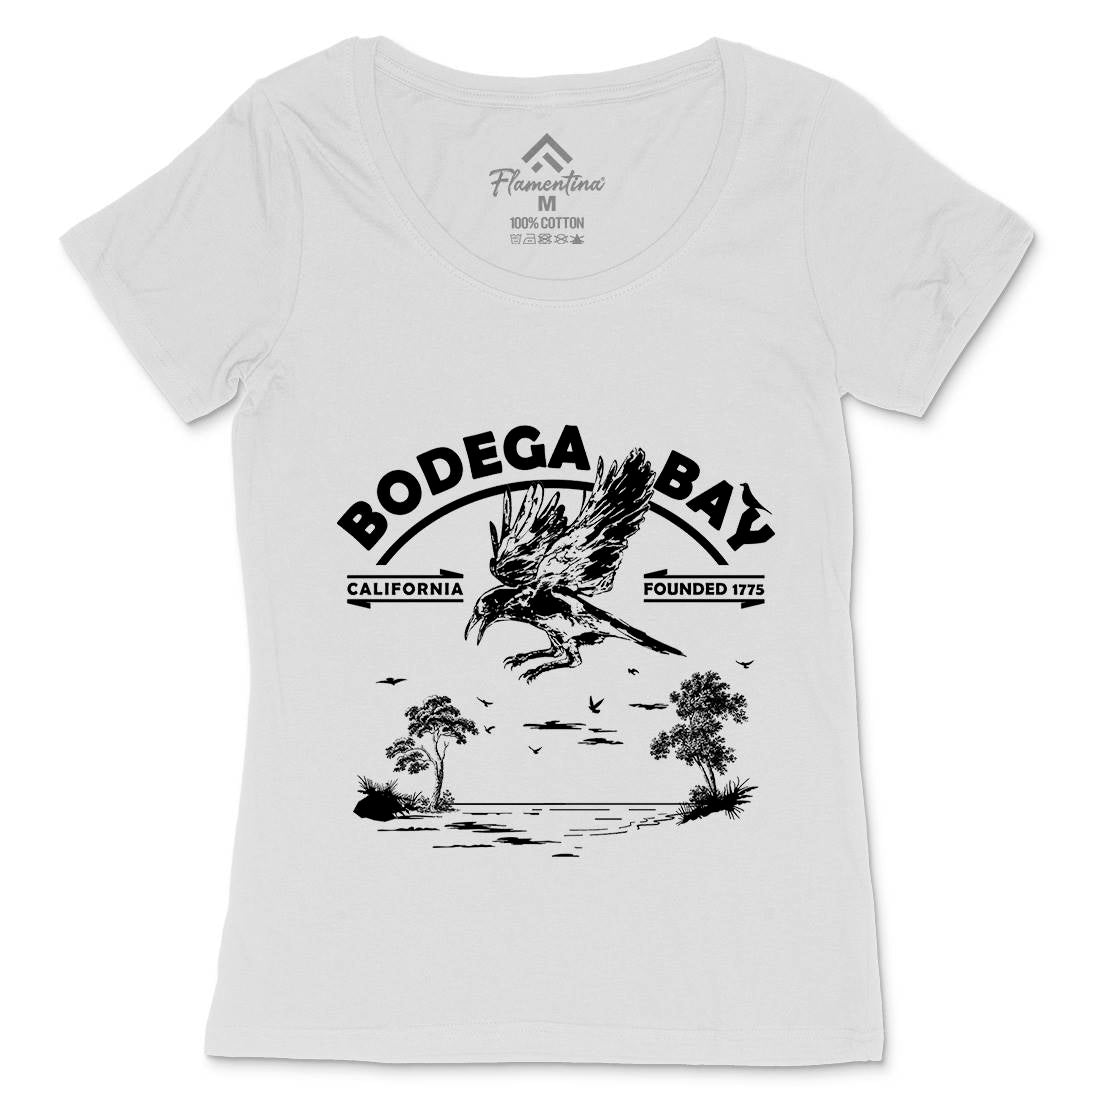 Bodega Bay Womens Scoop Neck T-Shirt Horror D310